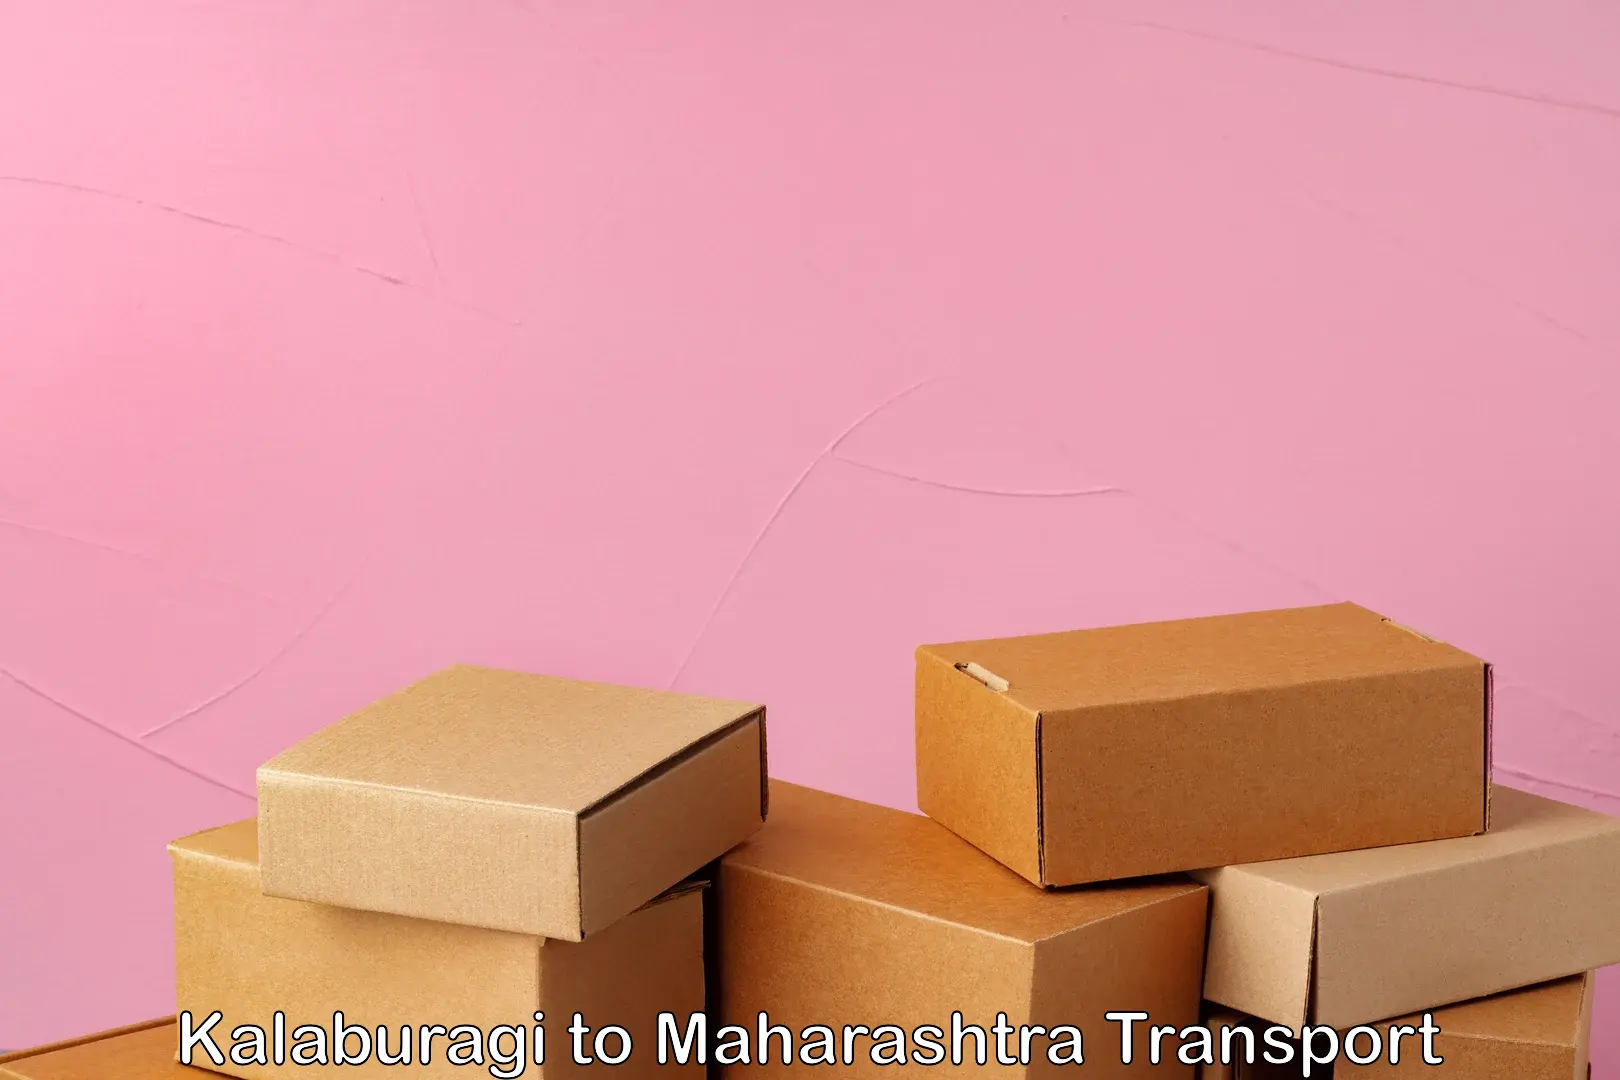 Cargo transport services Kalaburagi to Maharashtra